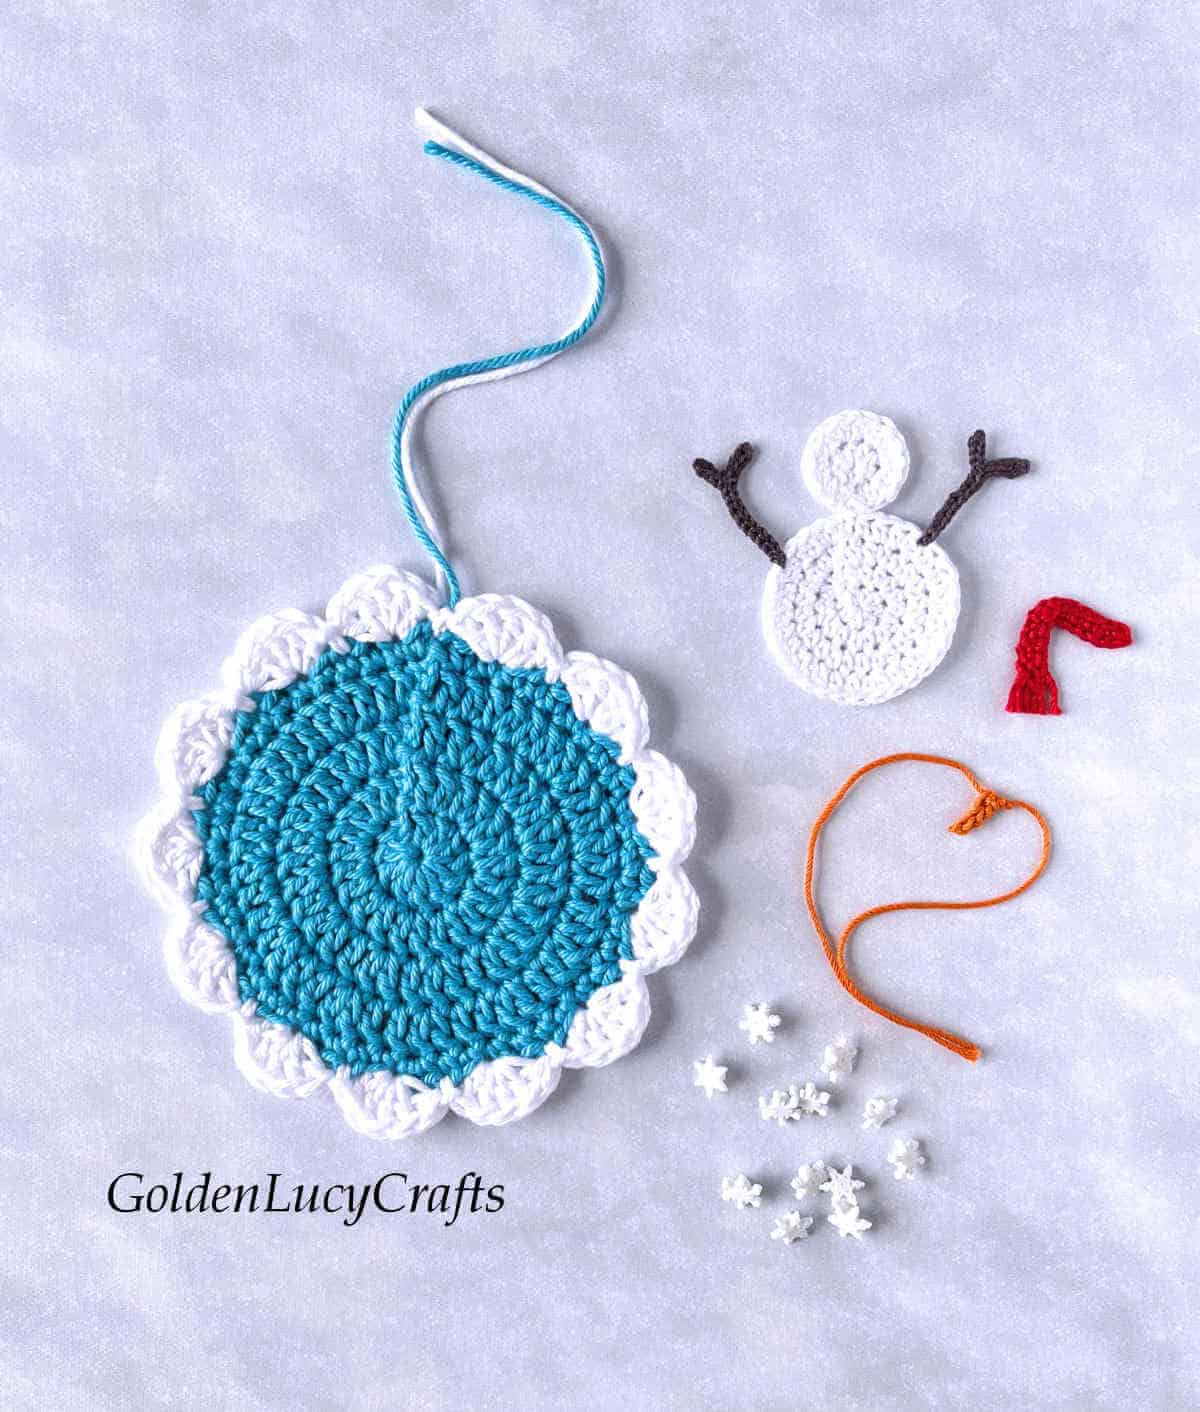 Parts of crochet winter ornament - base, snowman applique, snowflake buttons.